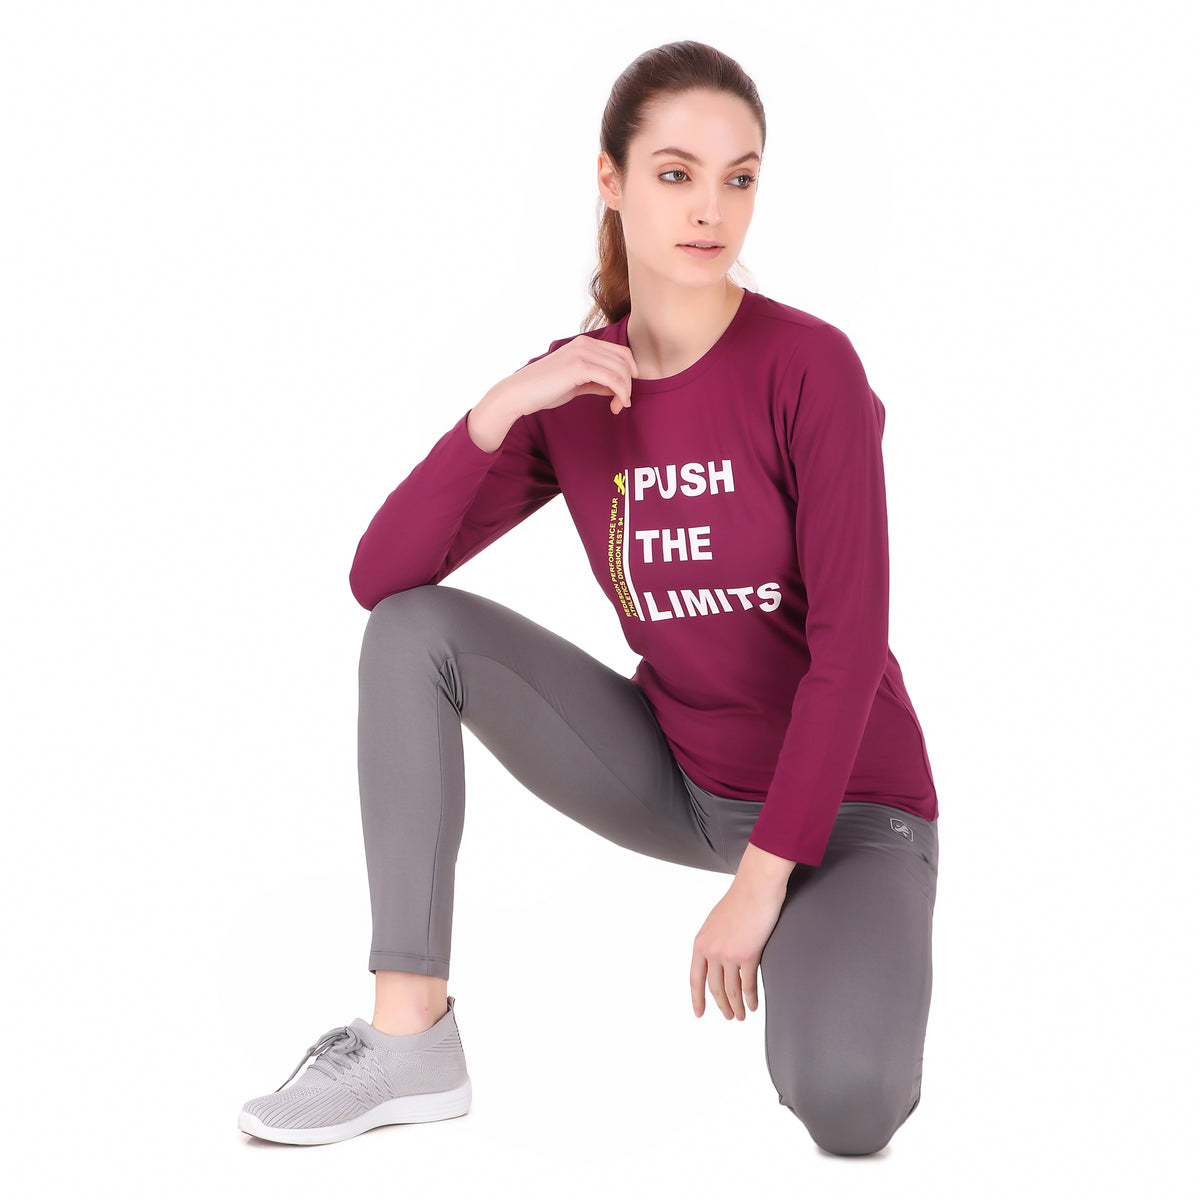 Push The Limits Tshirt For Women FS (Plum)